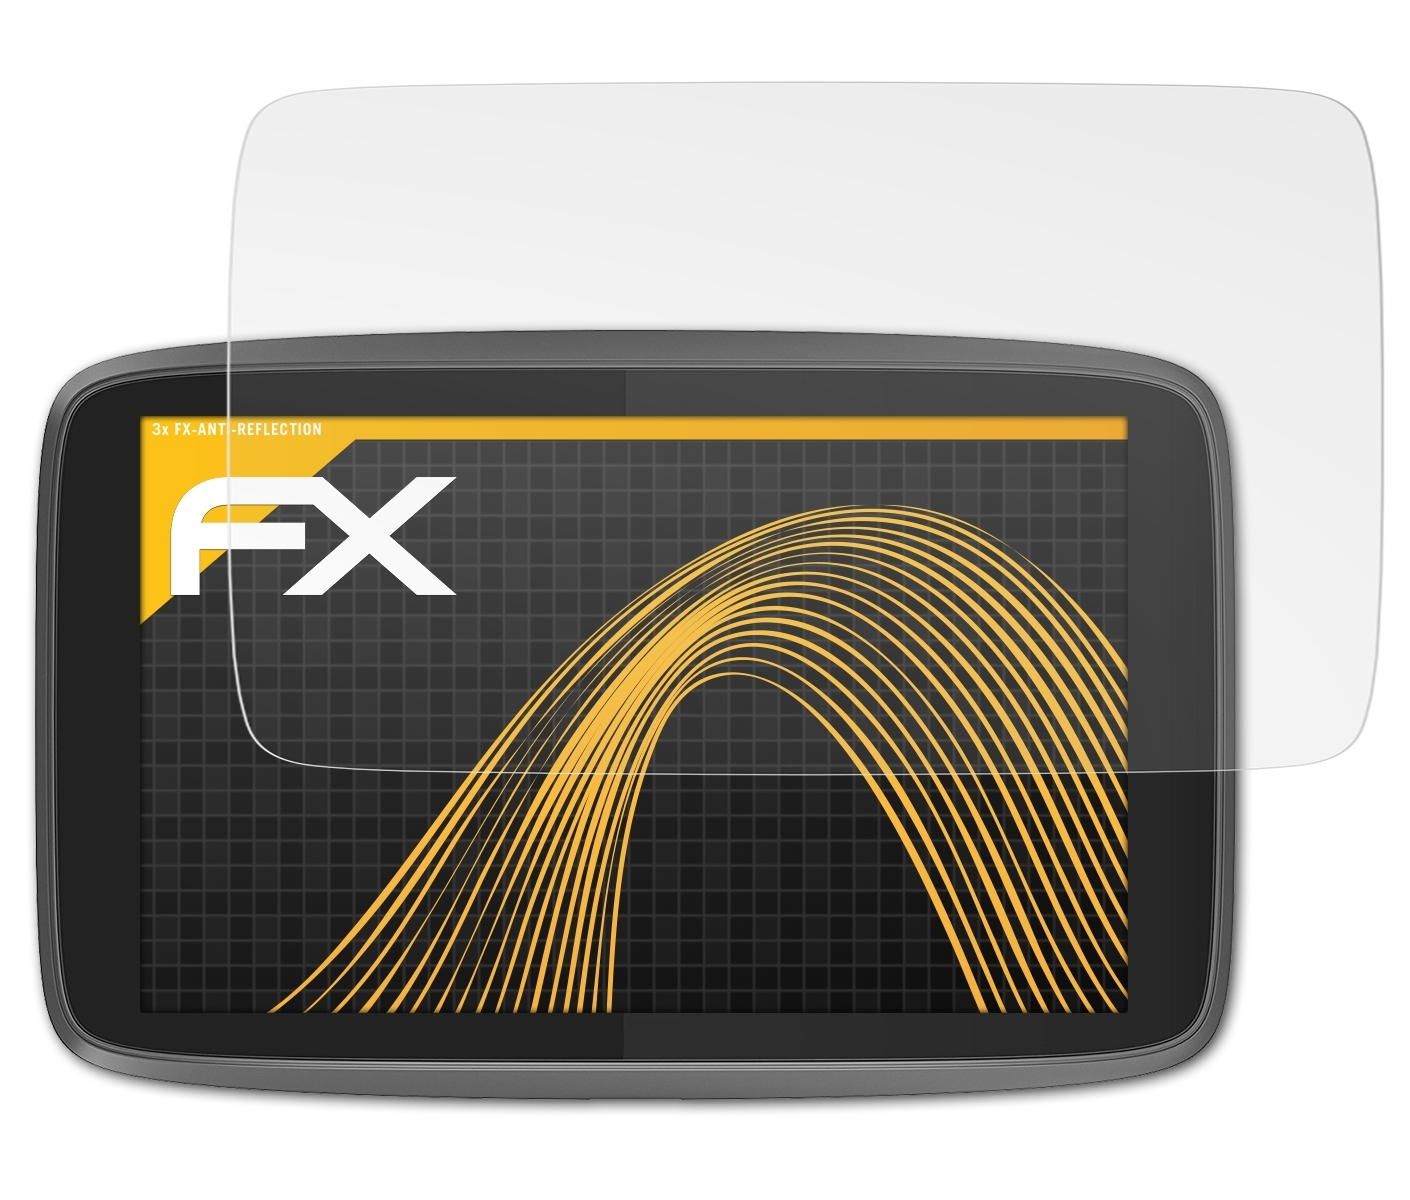 3x Professional 520) ATFOLIX Go TomTom FX-Antireflex Displayschutz(für